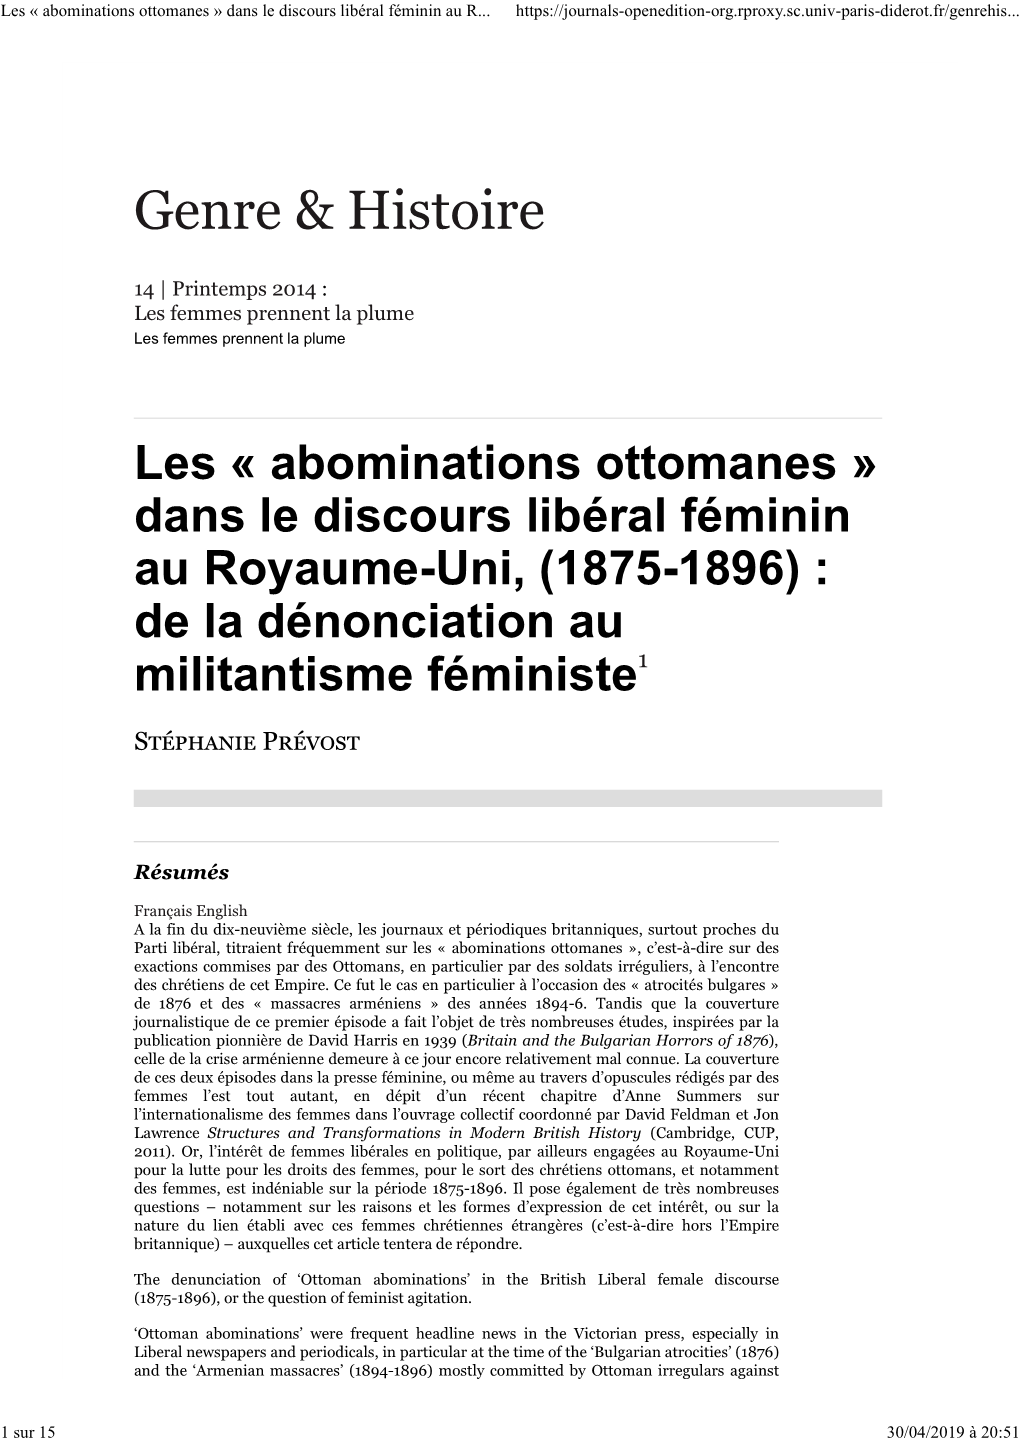 Les « Abominations Ottomanes » Dans Le Discours Libéral Féminin Au R